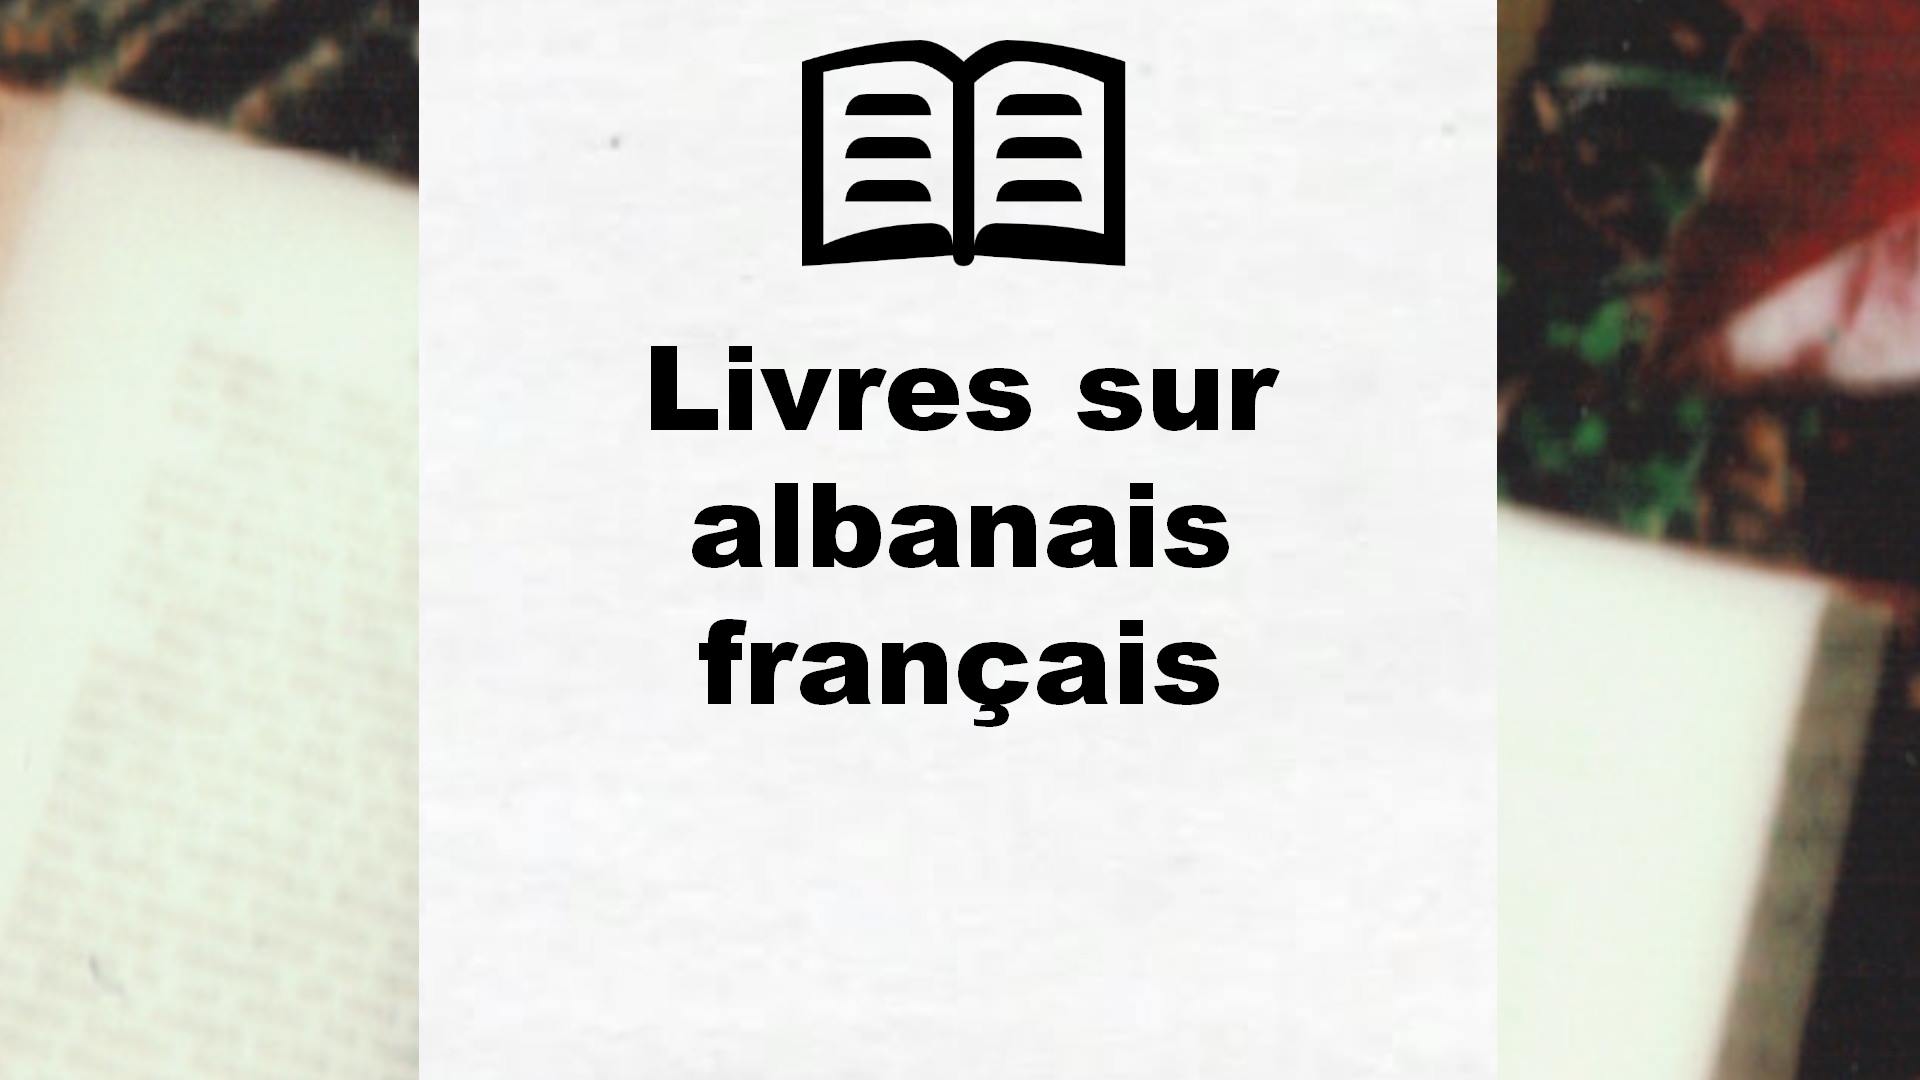 Livres sur albanais français